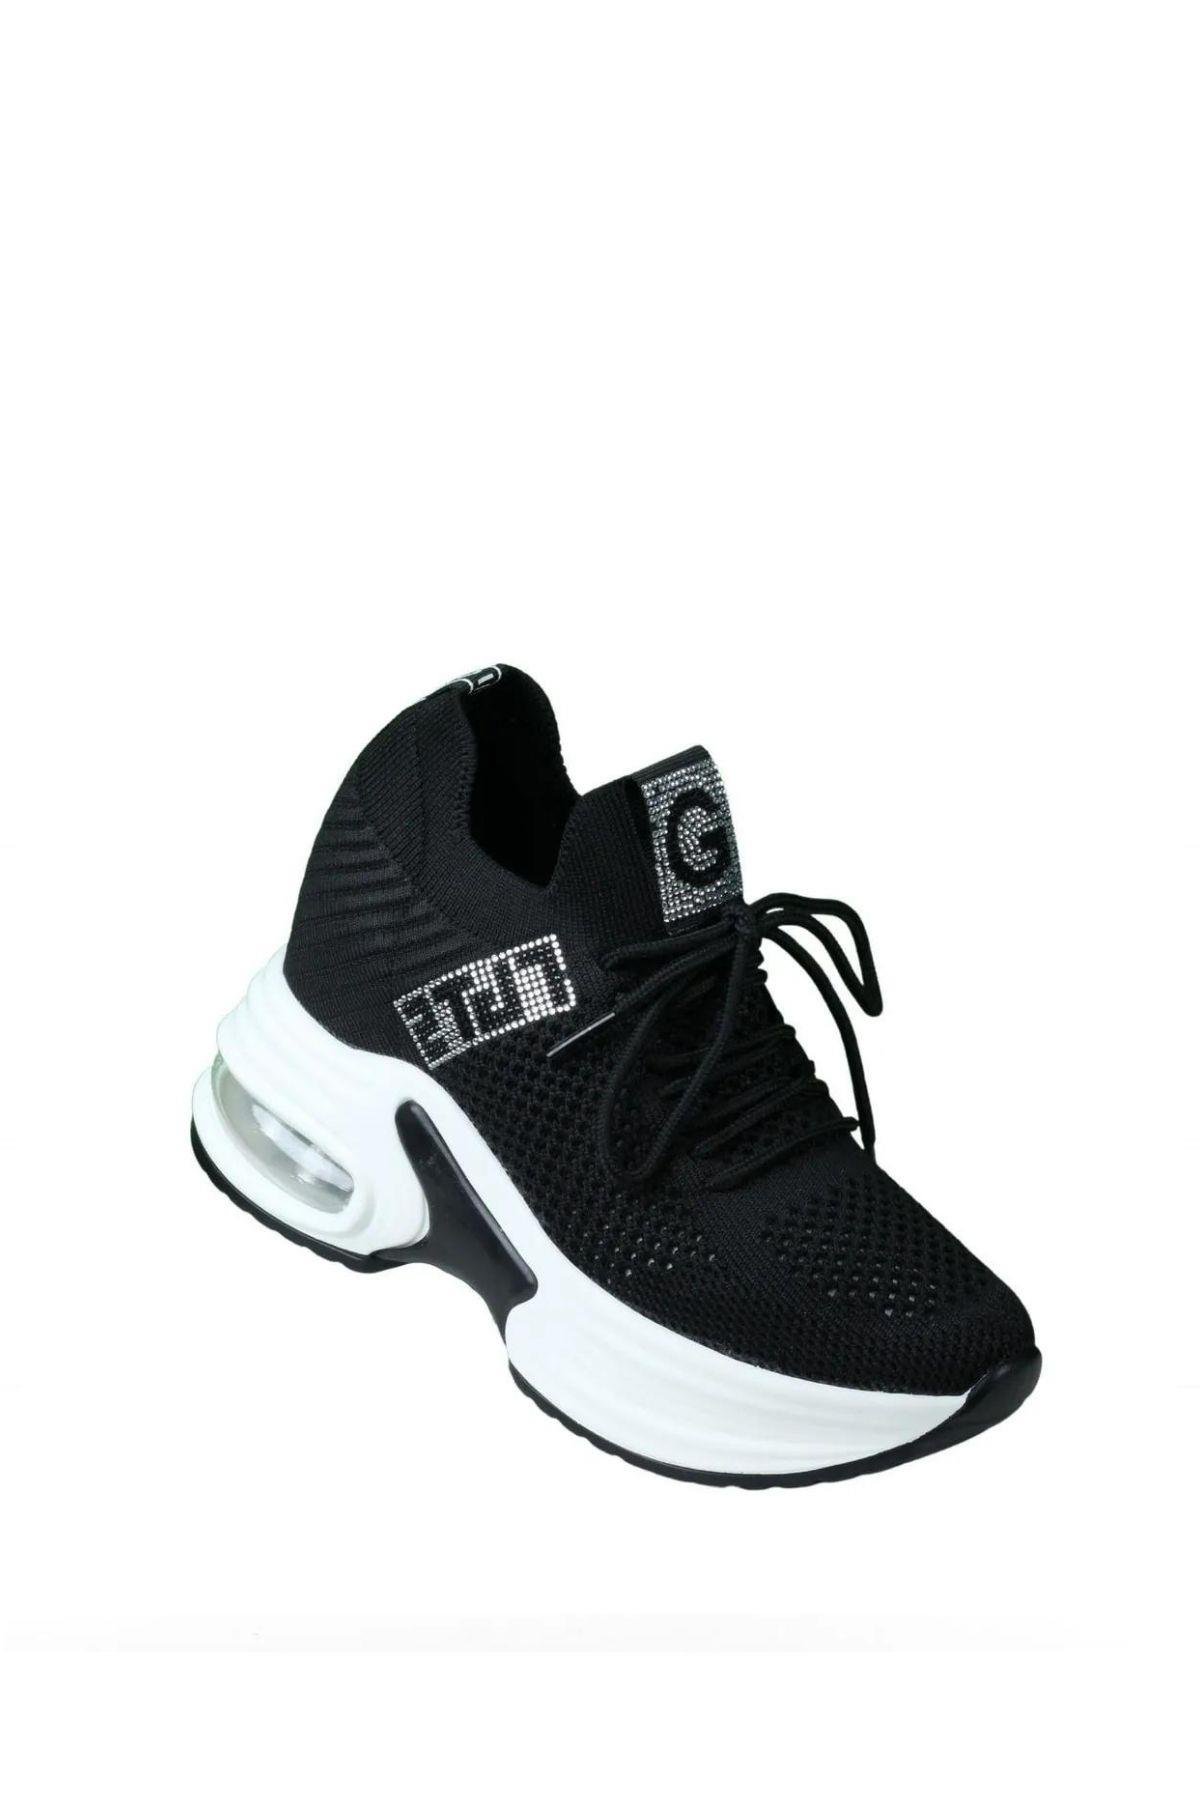 Guja 23Y300-1 Siyah İçten Gizli Taban Dolgu Topuk Kadın Spor Ayakkabı |  Lascada